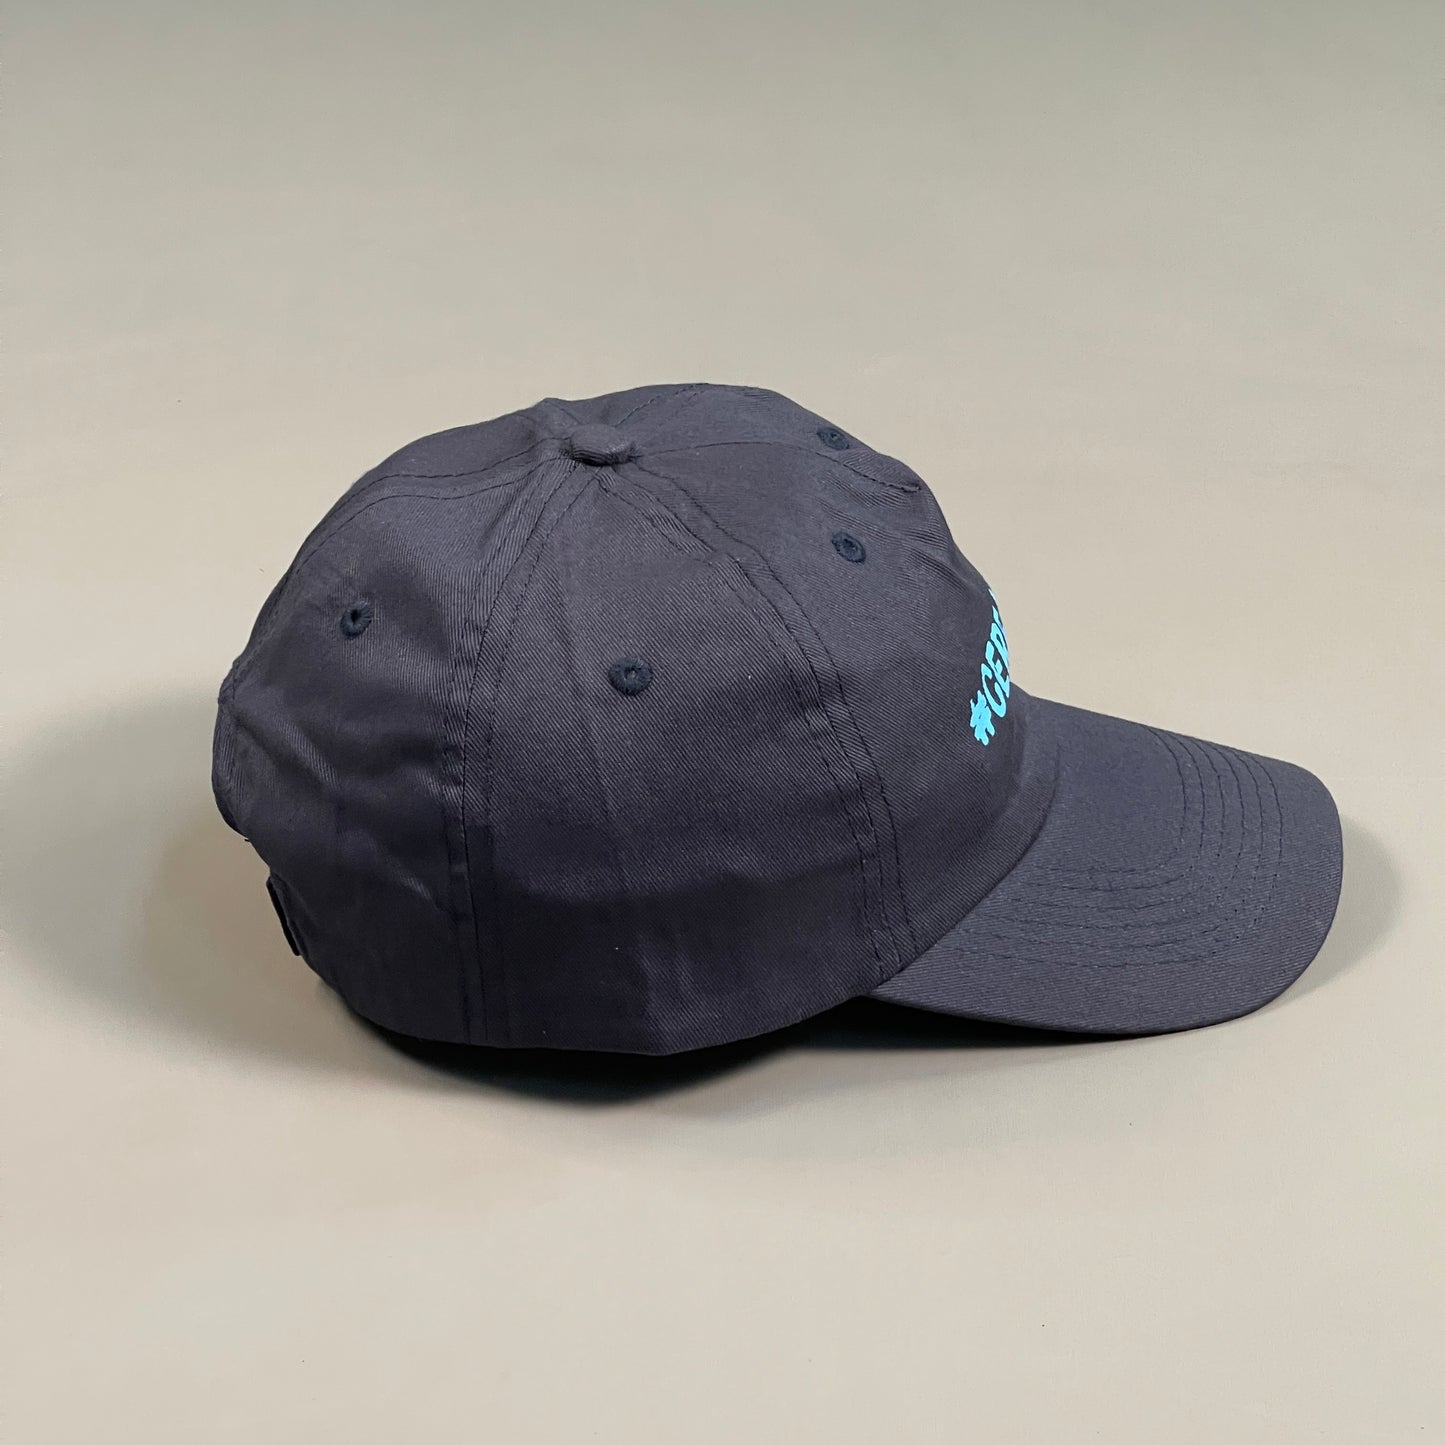 HITWEAR Cap "#Cerealmilk" Logo Adjustable Blue Trucker Hat (New)